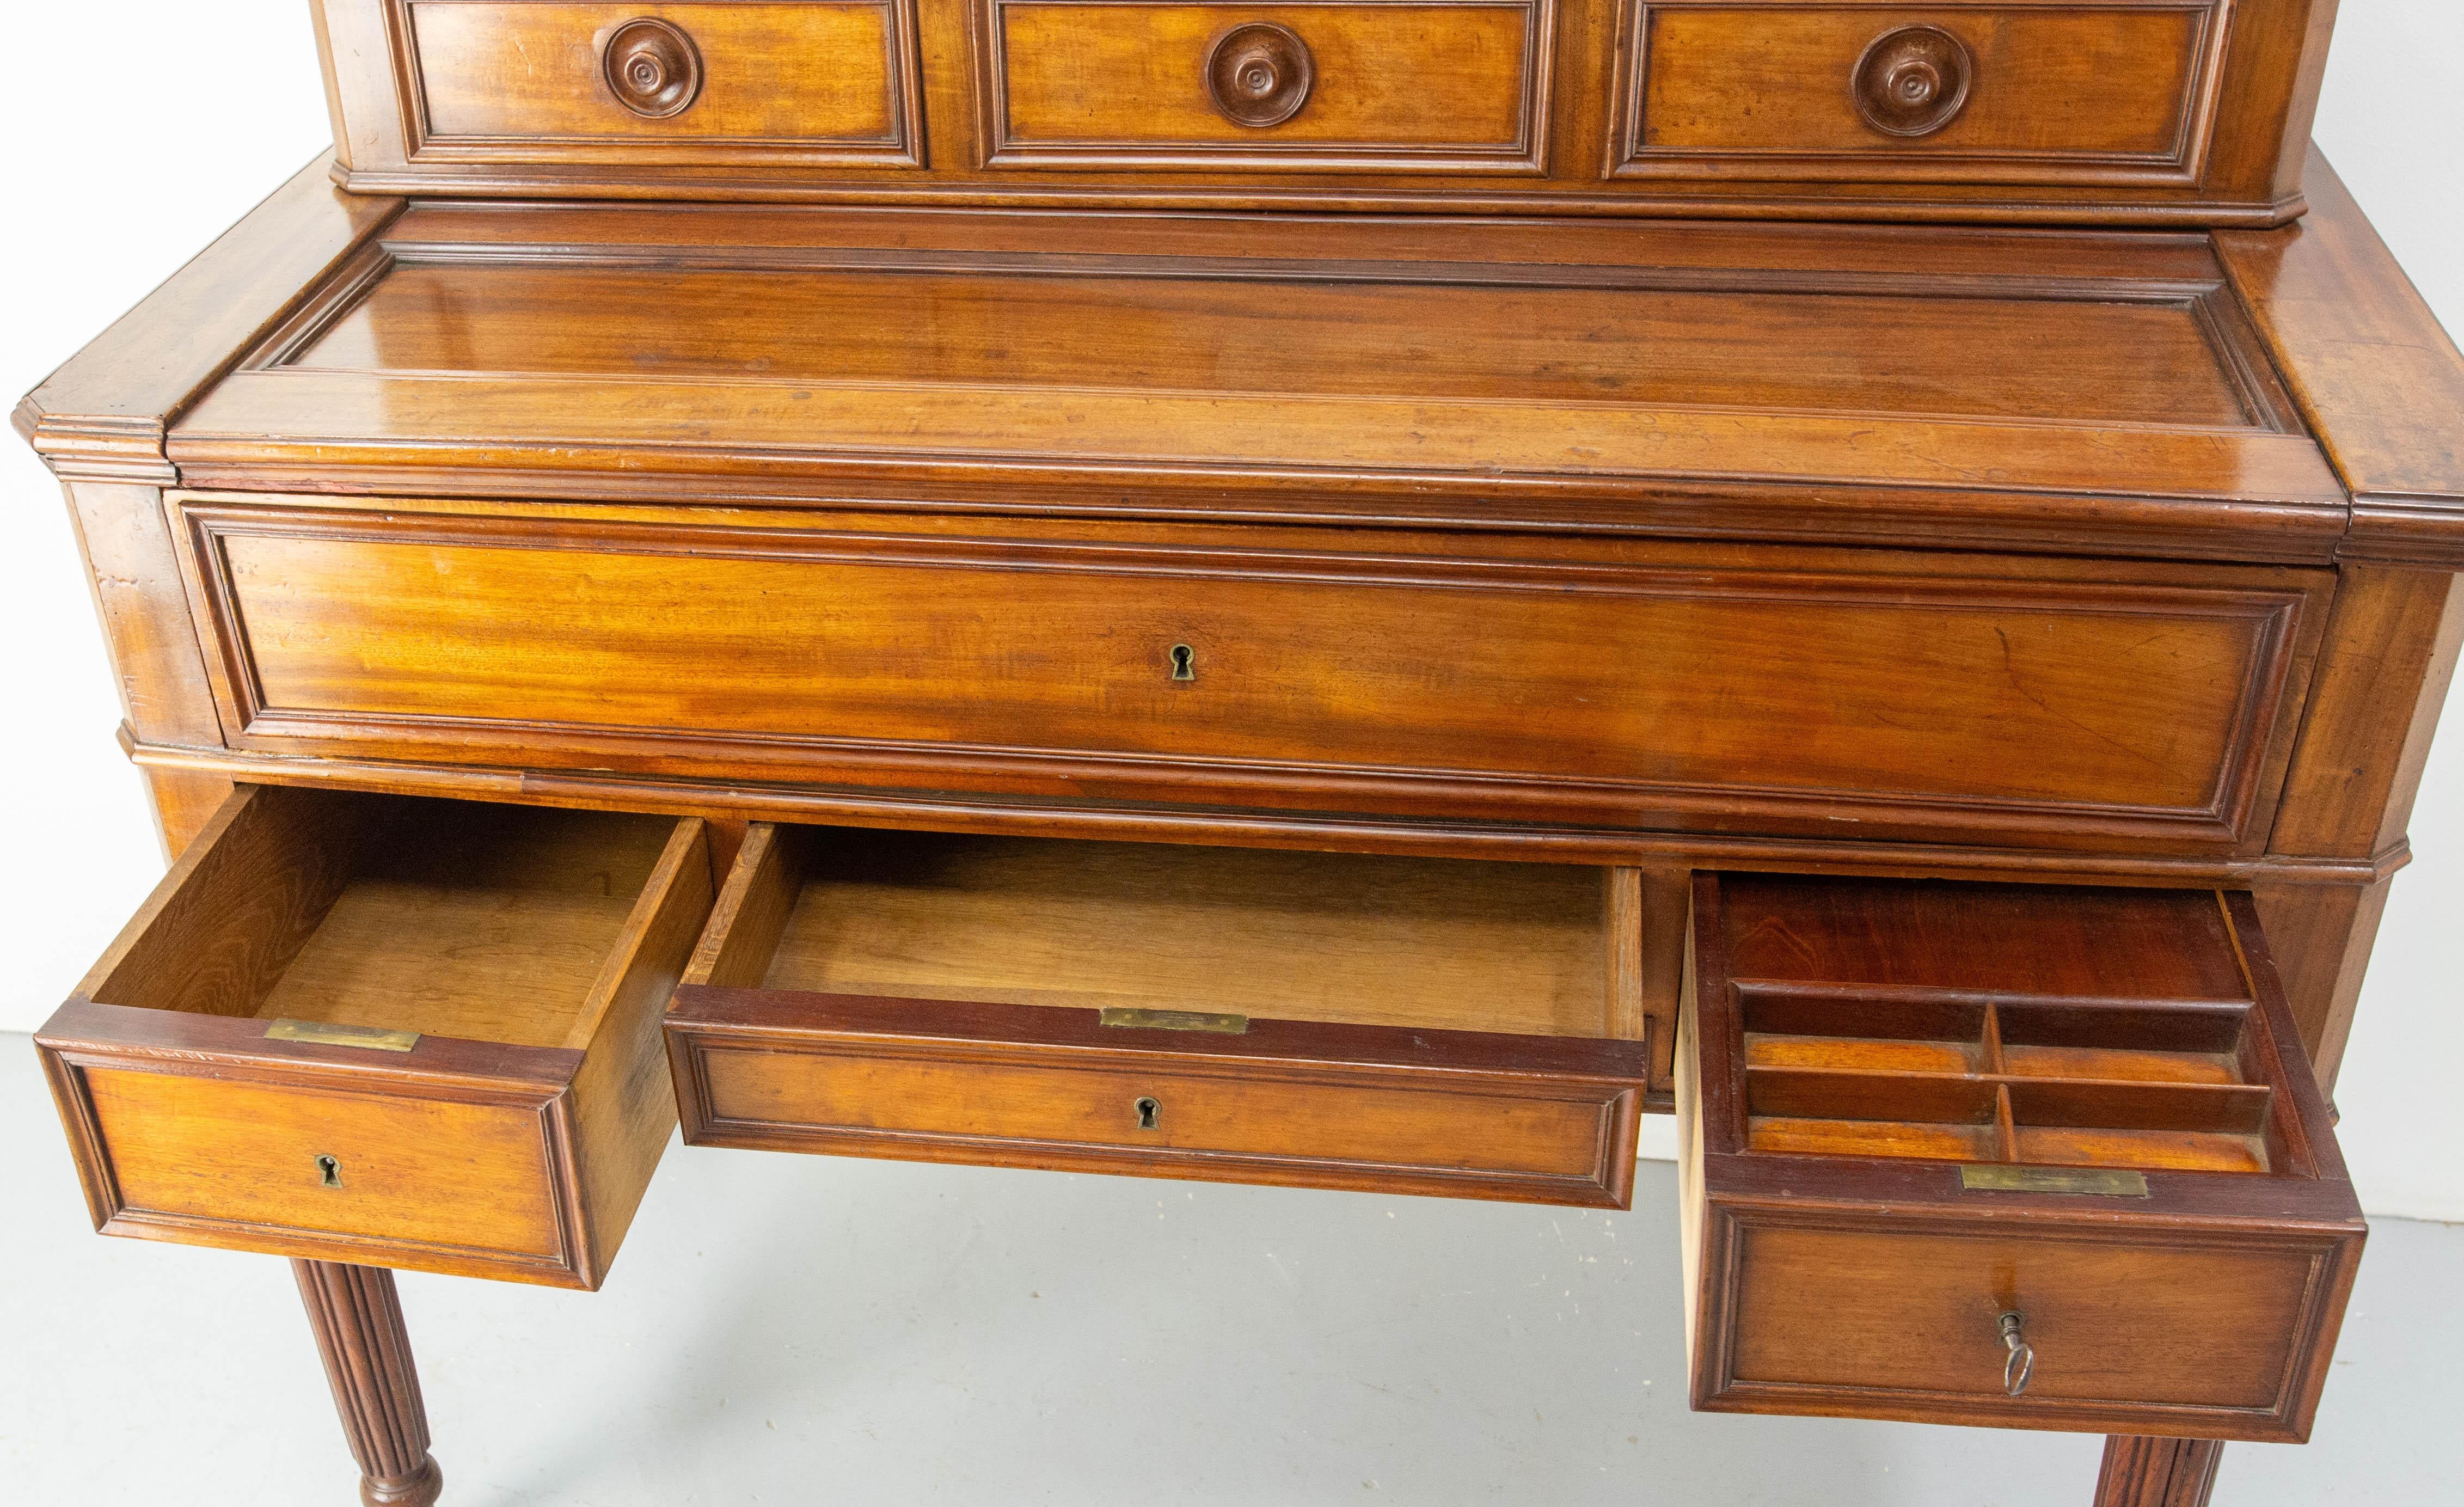 Französischer Louis-Philippe-Schreibtisch aus dem 19. Jahrhundert aus exotischem Holz, die Platte ist aus beschichtetem Stoff wiederhergestellt.
Dieser Sekretär kann ganz gesperrt werden. Wenn der Schreibtischteil geschlossen ist, können die drei